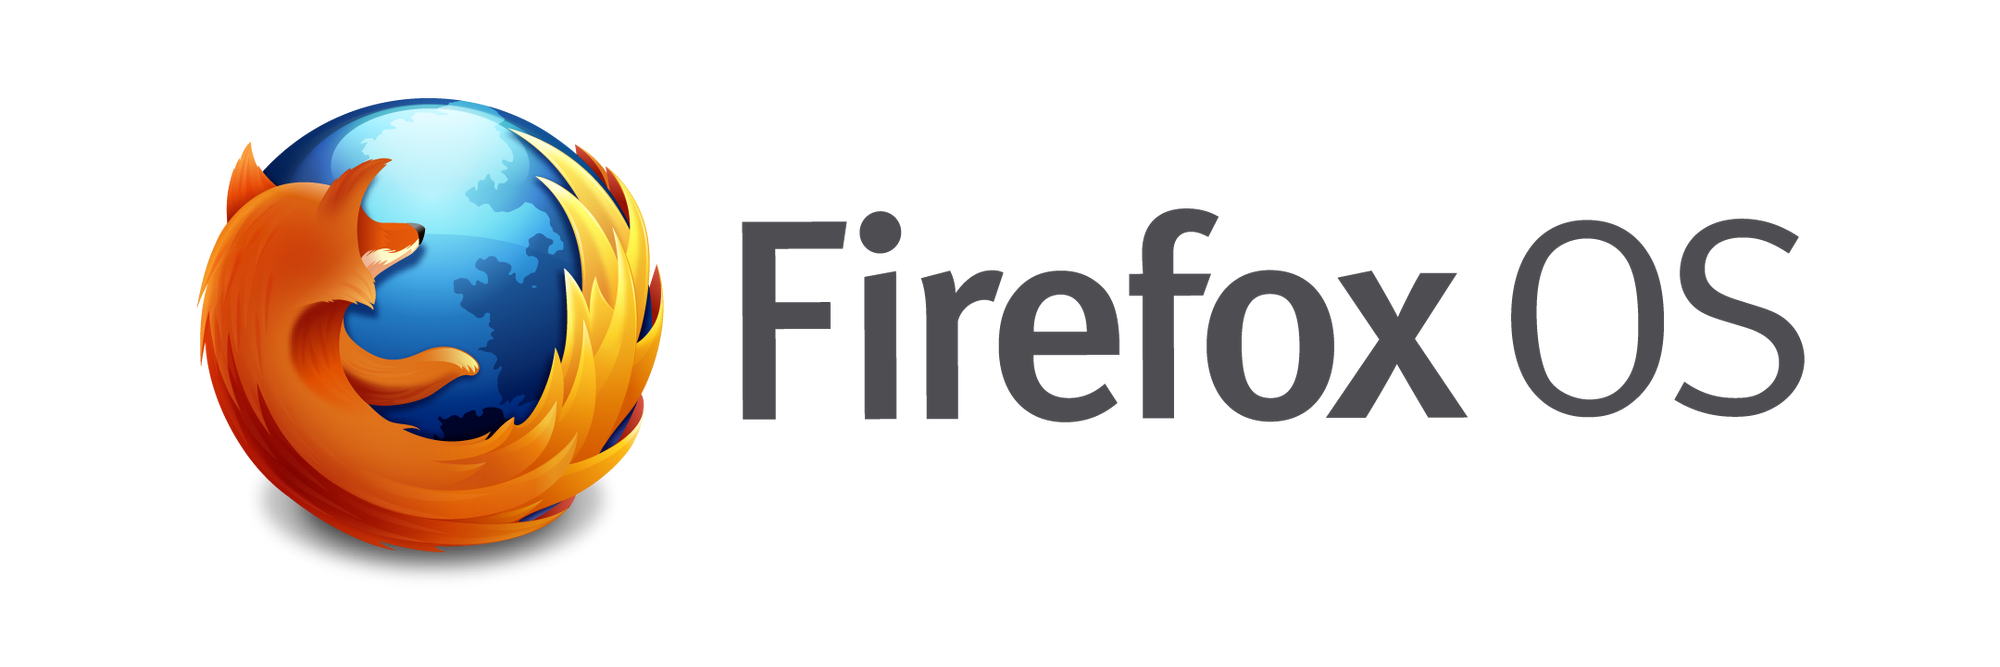 Firefox OS				Fan Feed